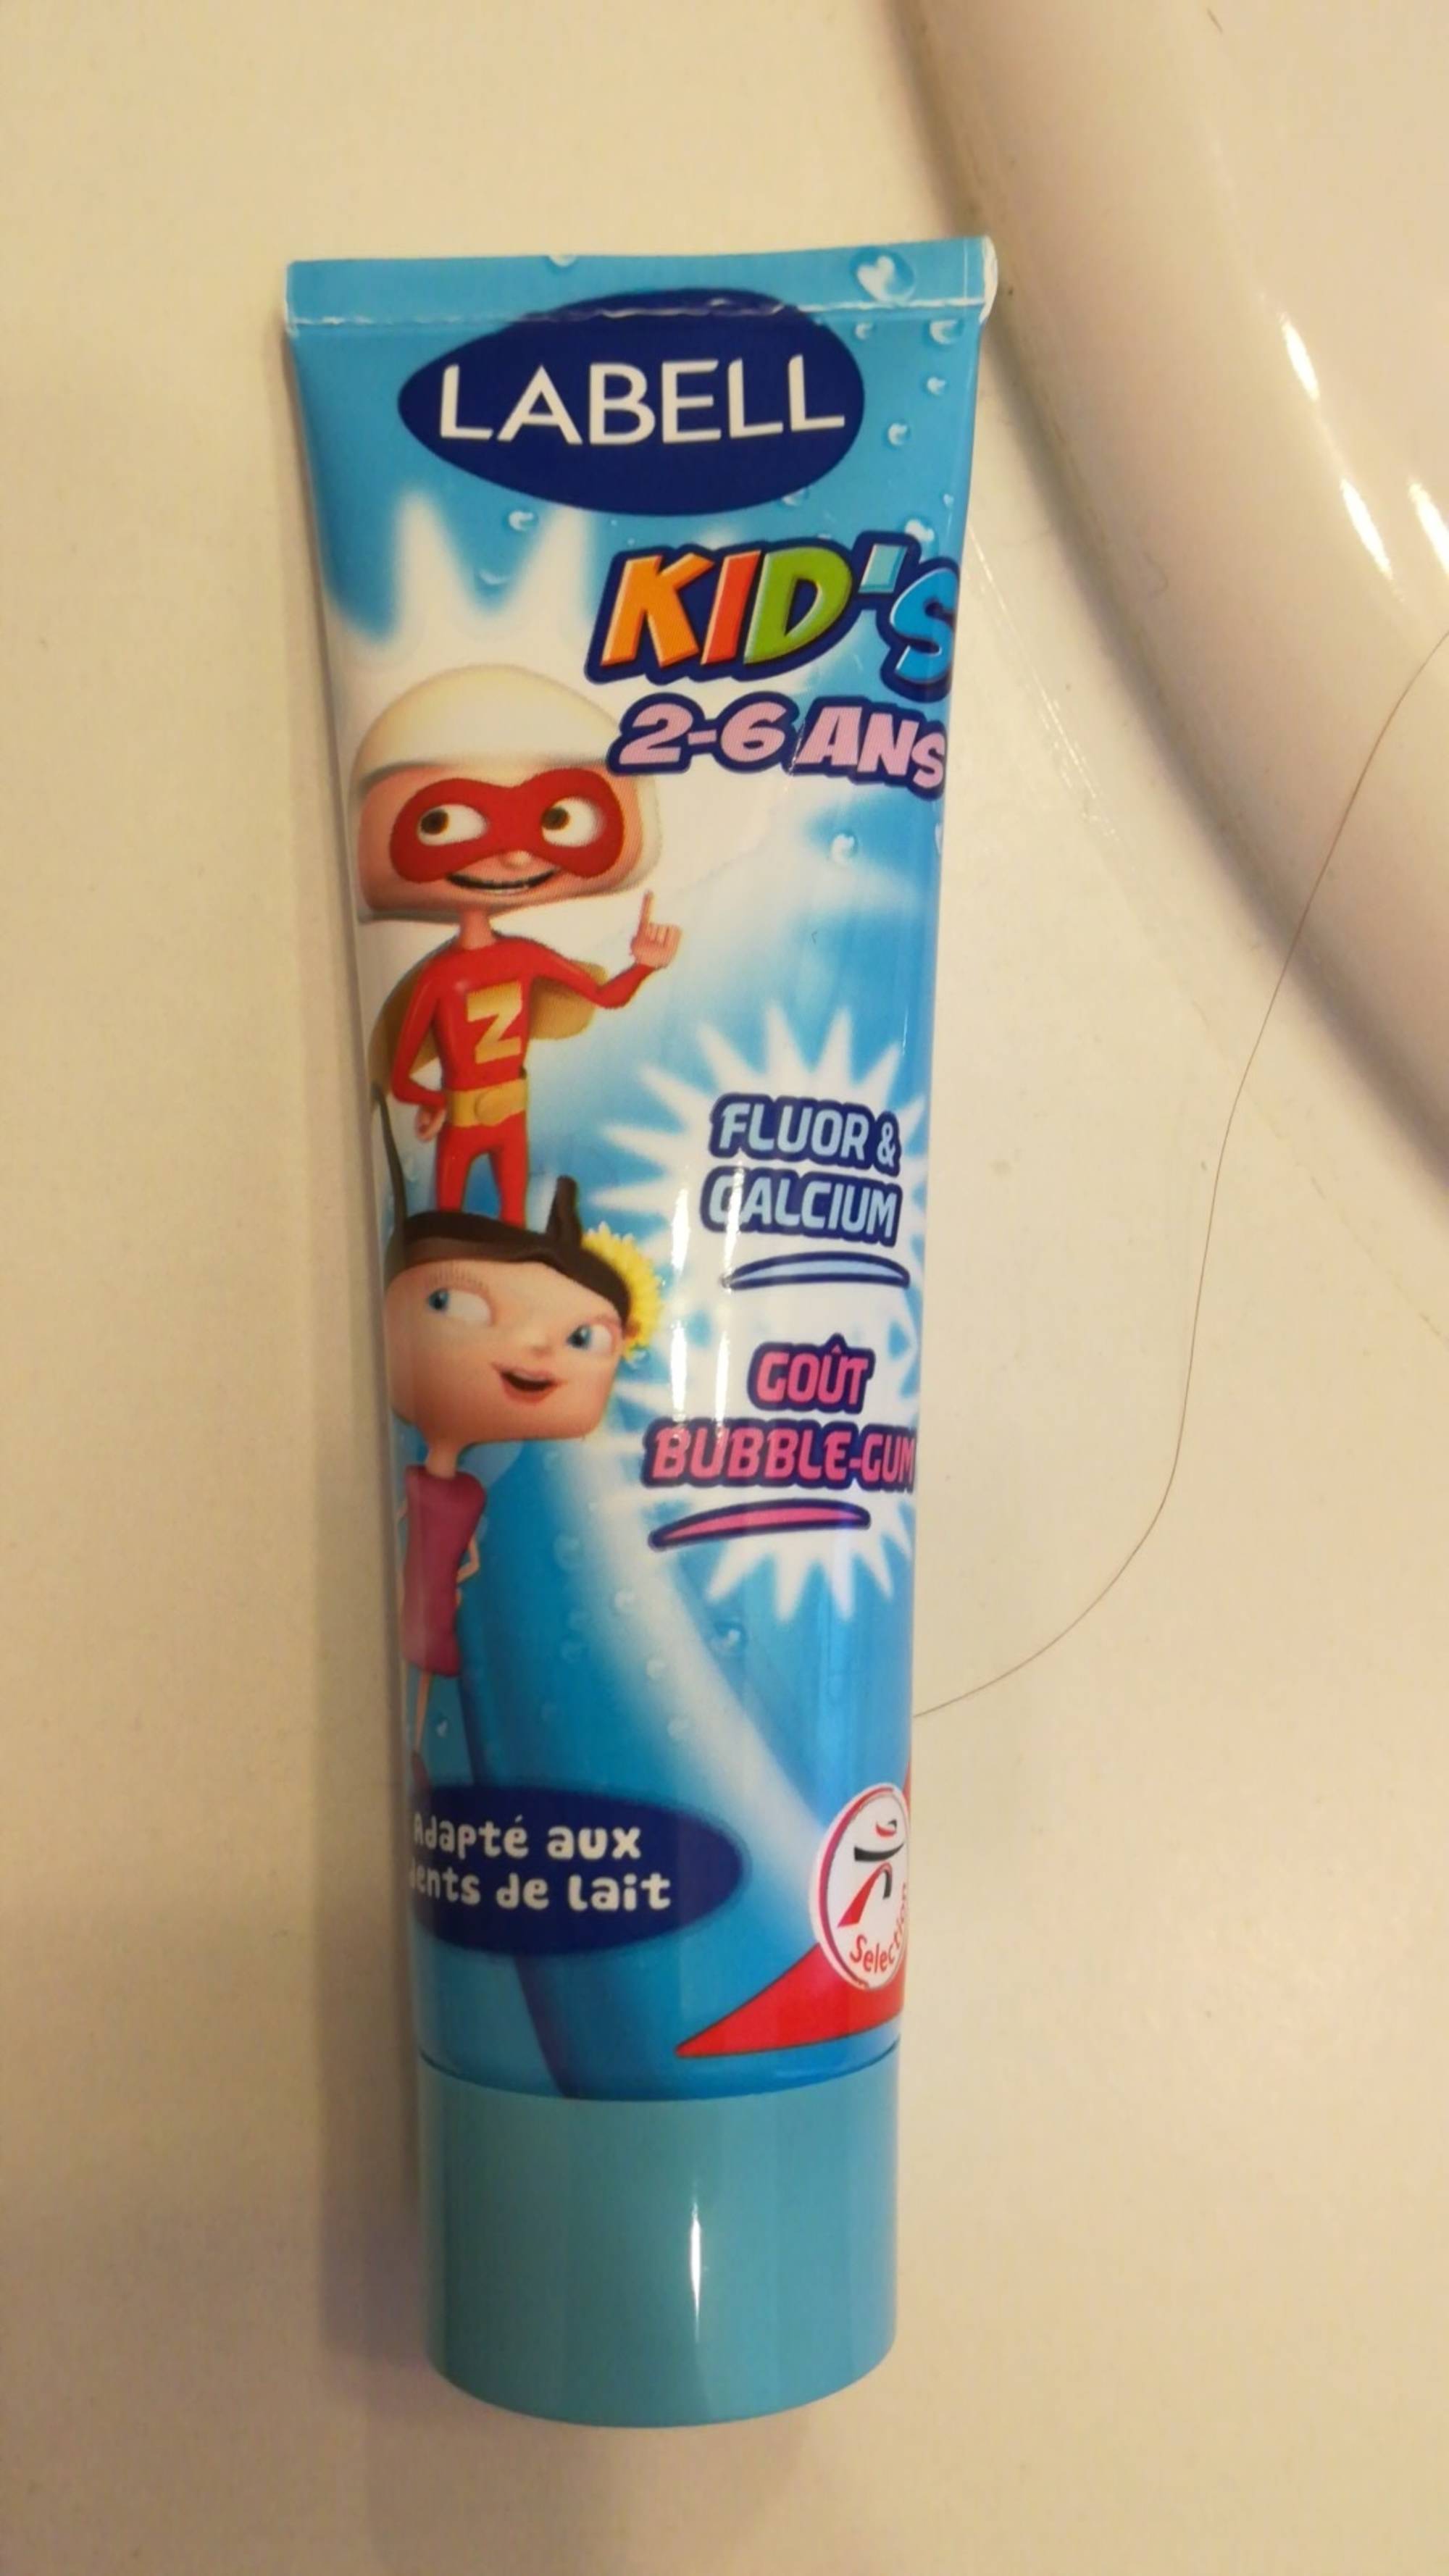 LABELL - Kid's 2-6 ans - Dentifrice adapté aux dent de lait